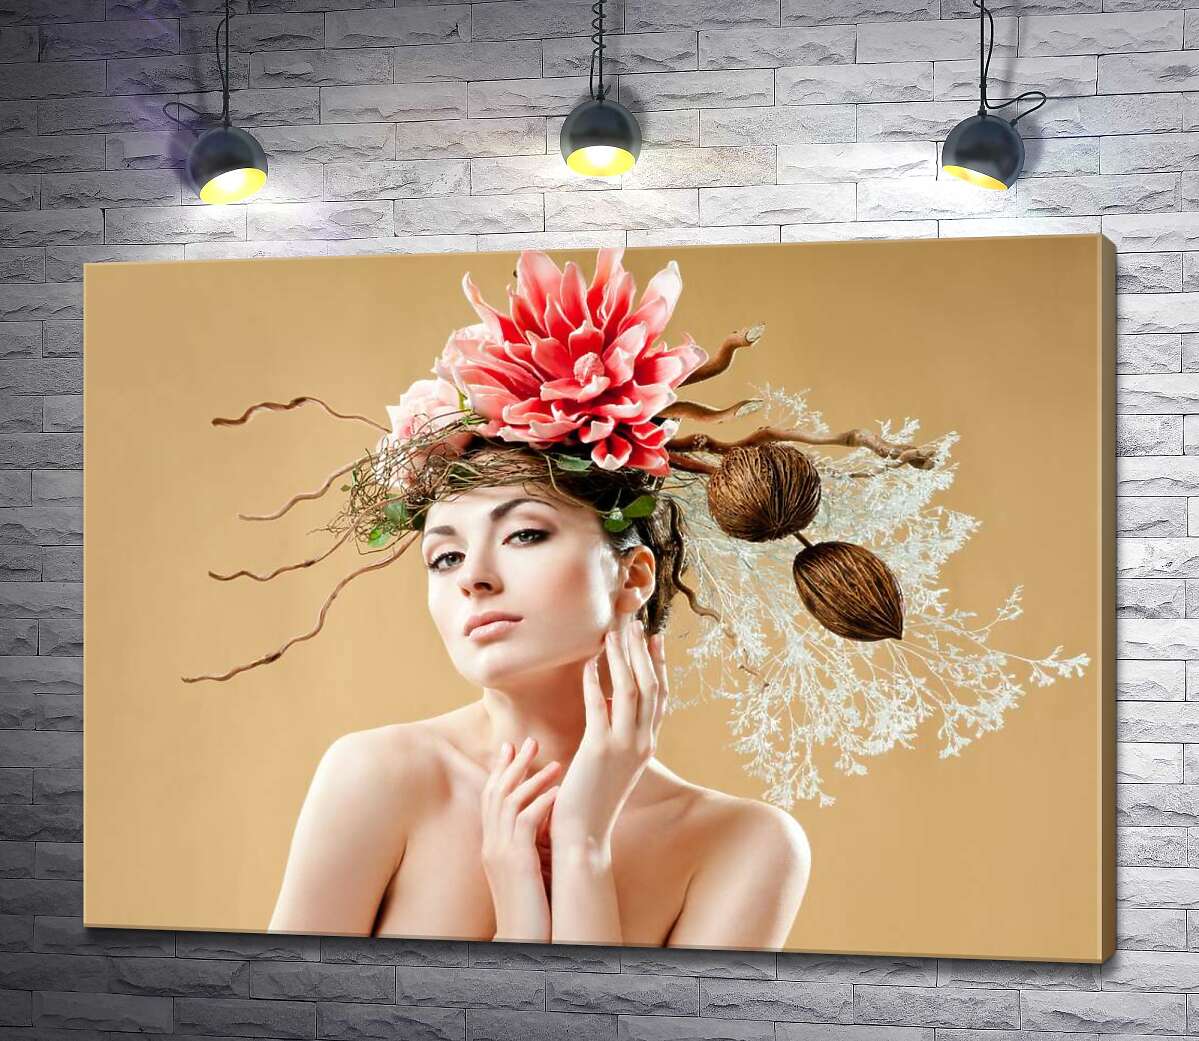 картина Бьюти портрет девушки с цветочным украшением на голове